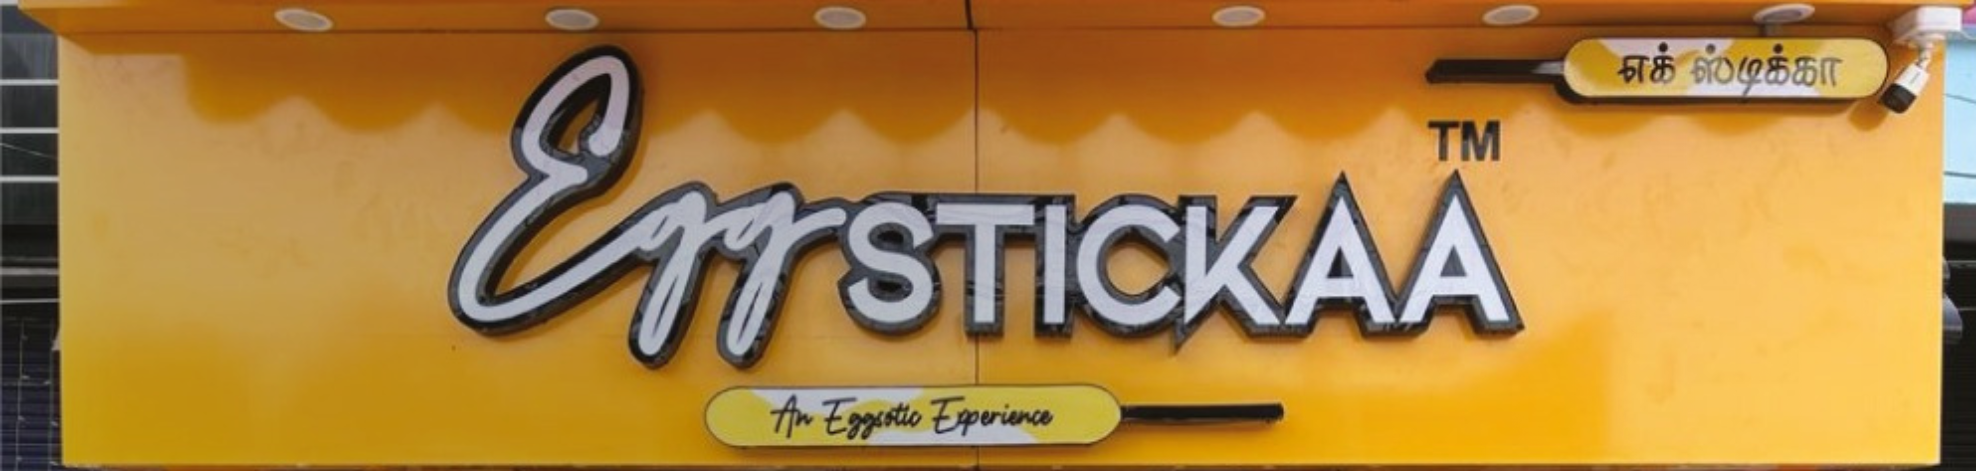 Eggstickaa